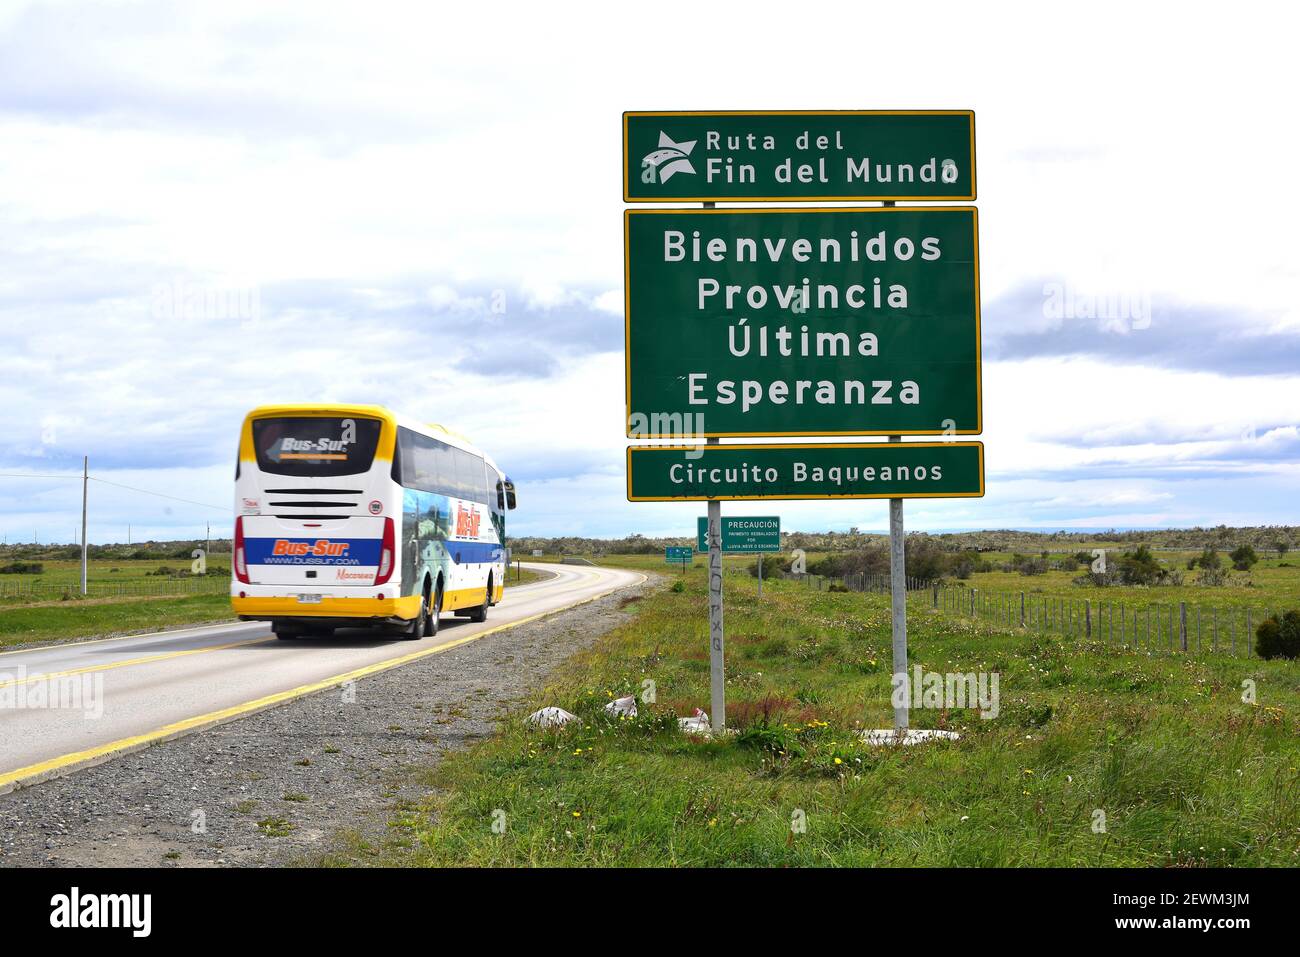 Ruta del fin del Mundo, Provincia de ultima Esperanza. Cile. Foto Stock